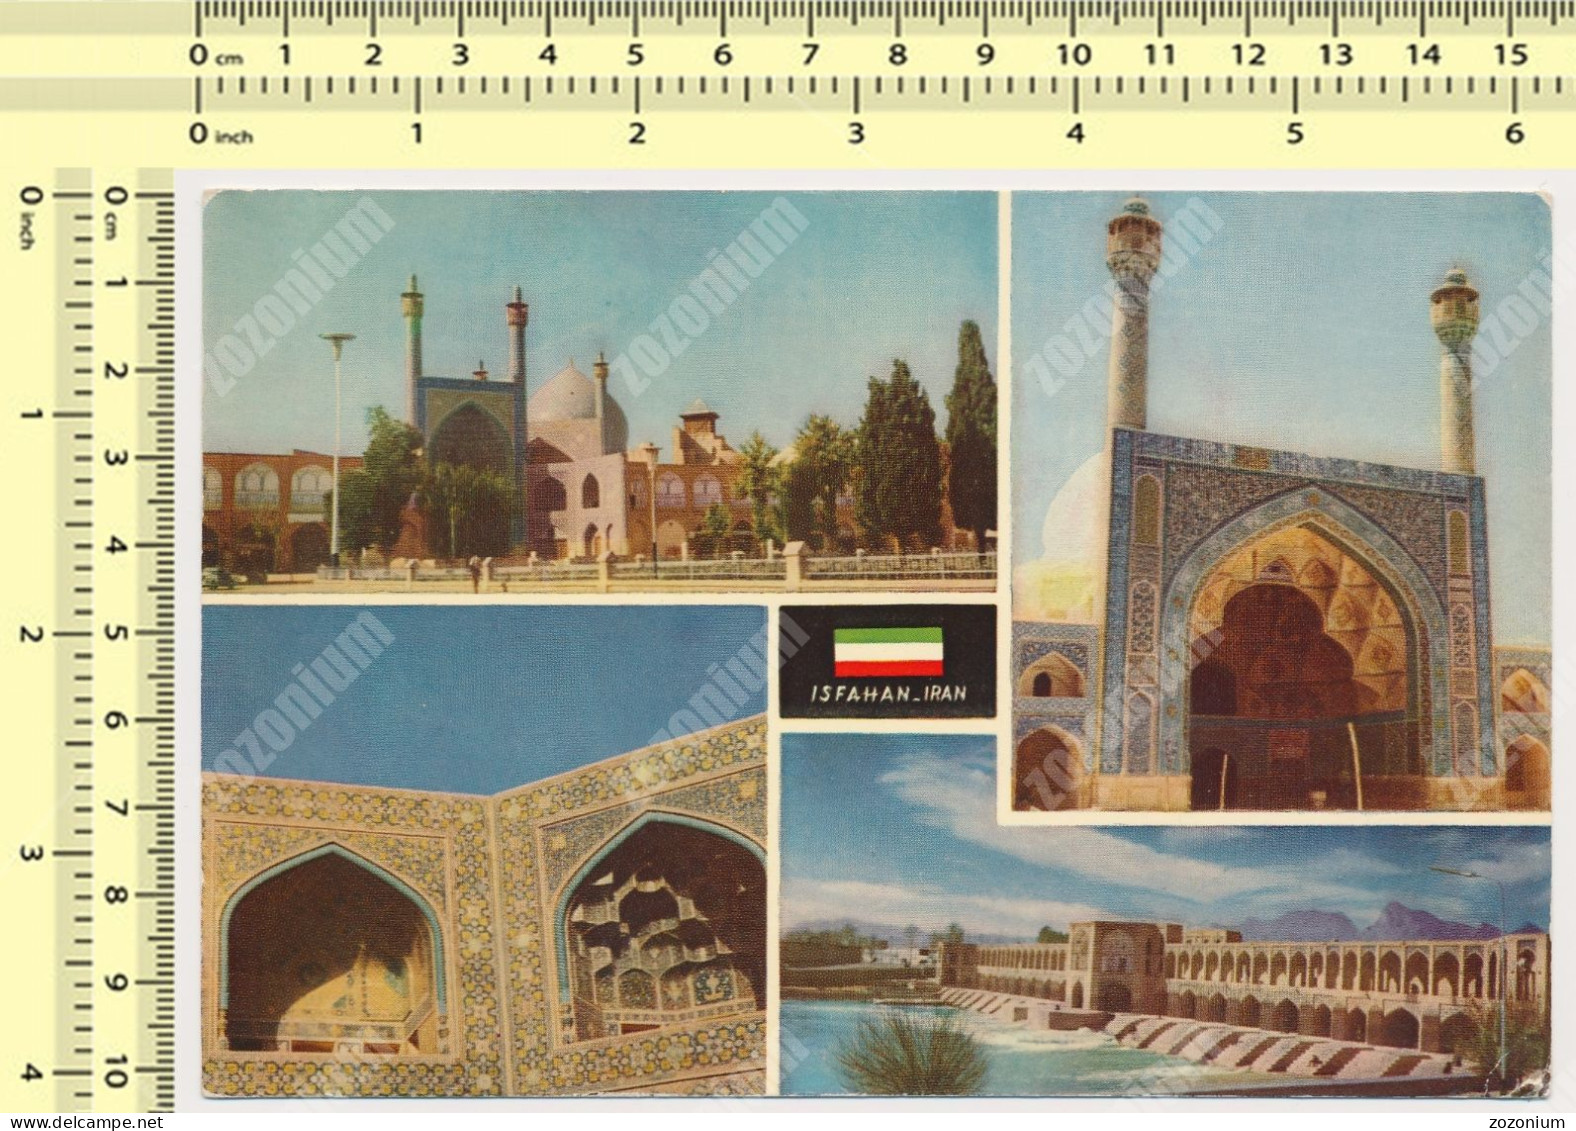 Isfahan, Iran - Historic Mosques Khajoo Bridge 1960s Mosquées Historiques Et Pont Khajoo ORG VTG POSTCARD CARTE POSTALE - Iran